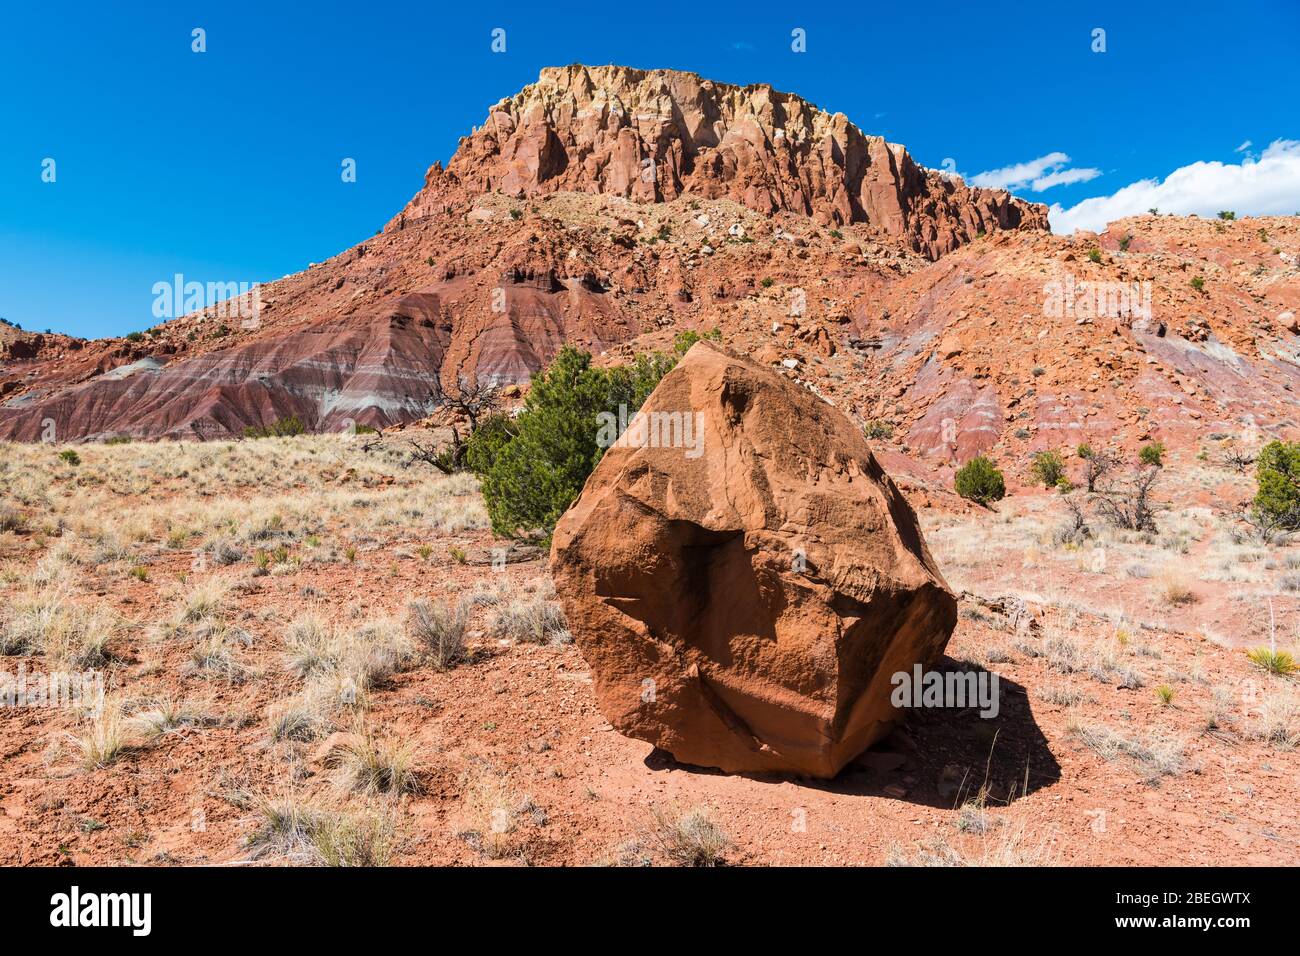 Großer Felsblock in einer Wüstenlandschaft mit einem bunten mesa im Hintergrund bei Abiquiu, New Mexico Stockfoto